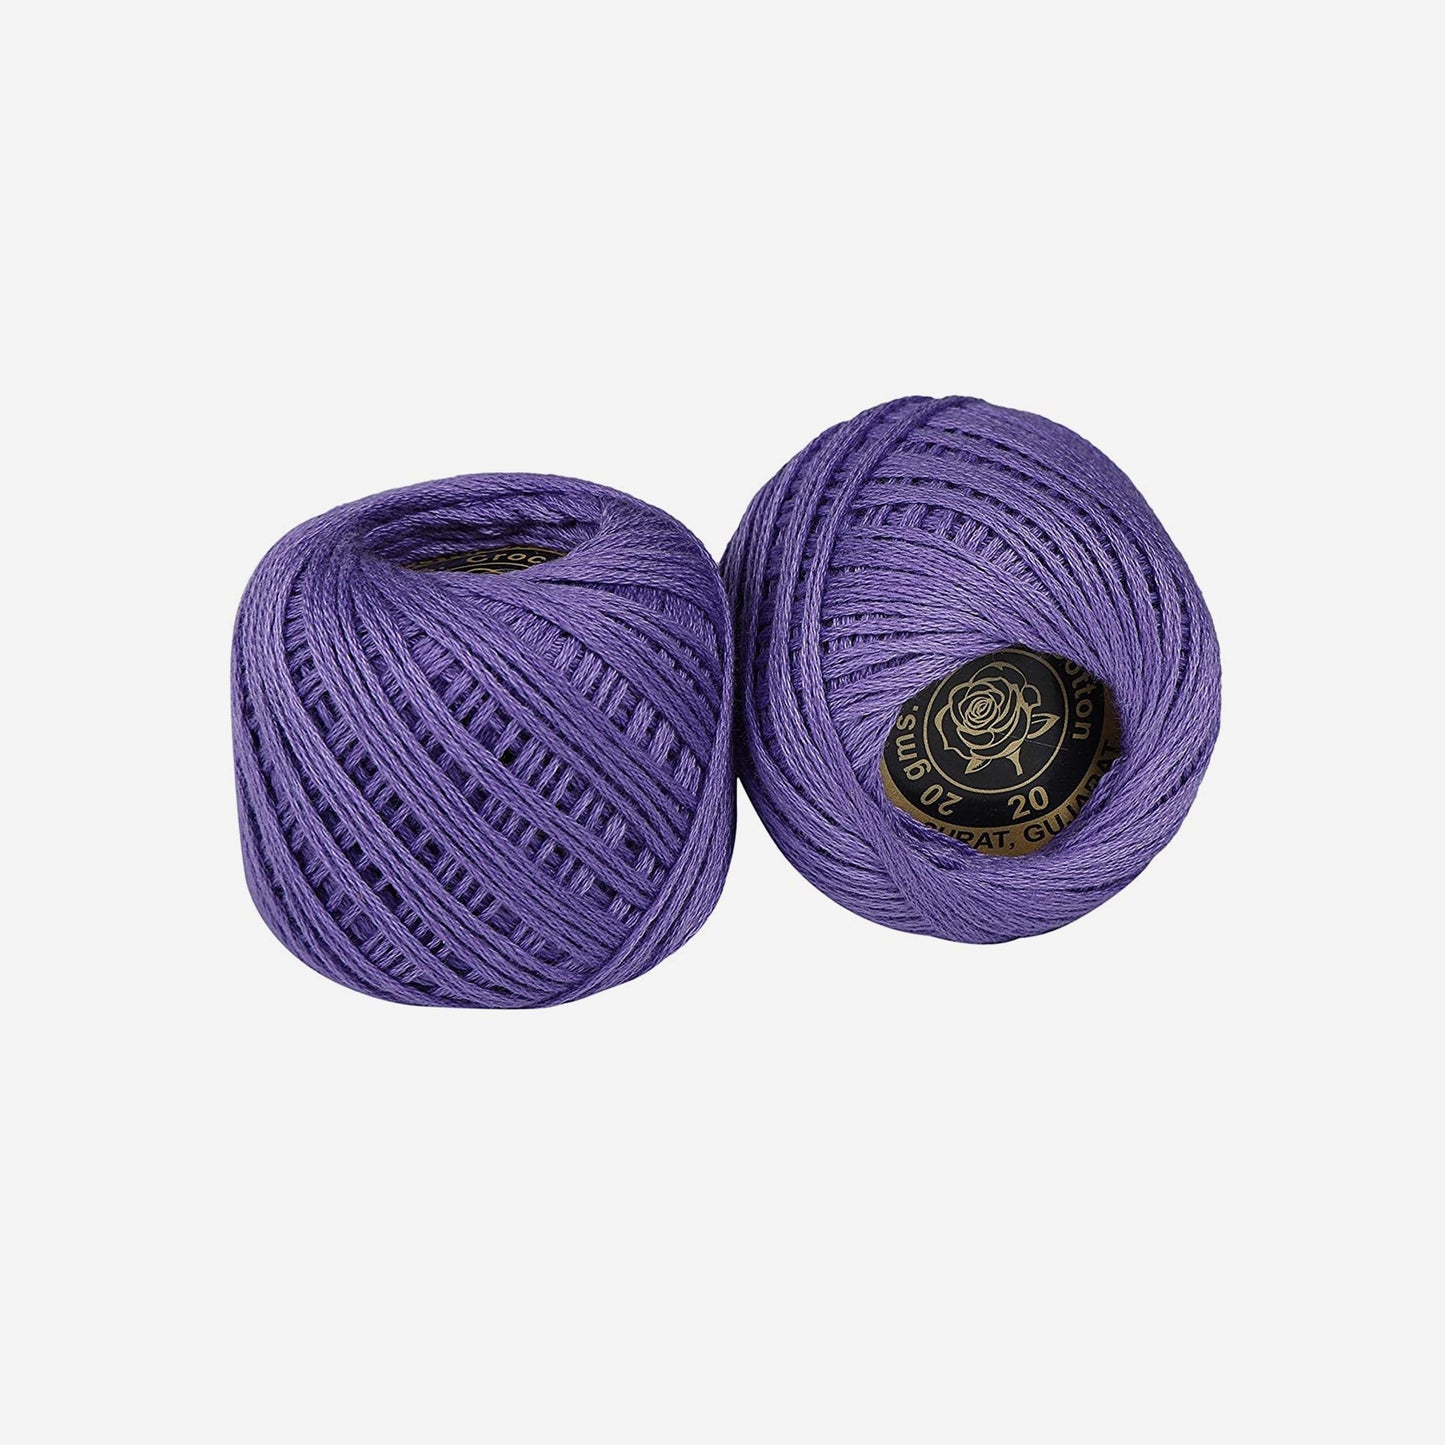 Hand-crochet hoops (Variation 9)